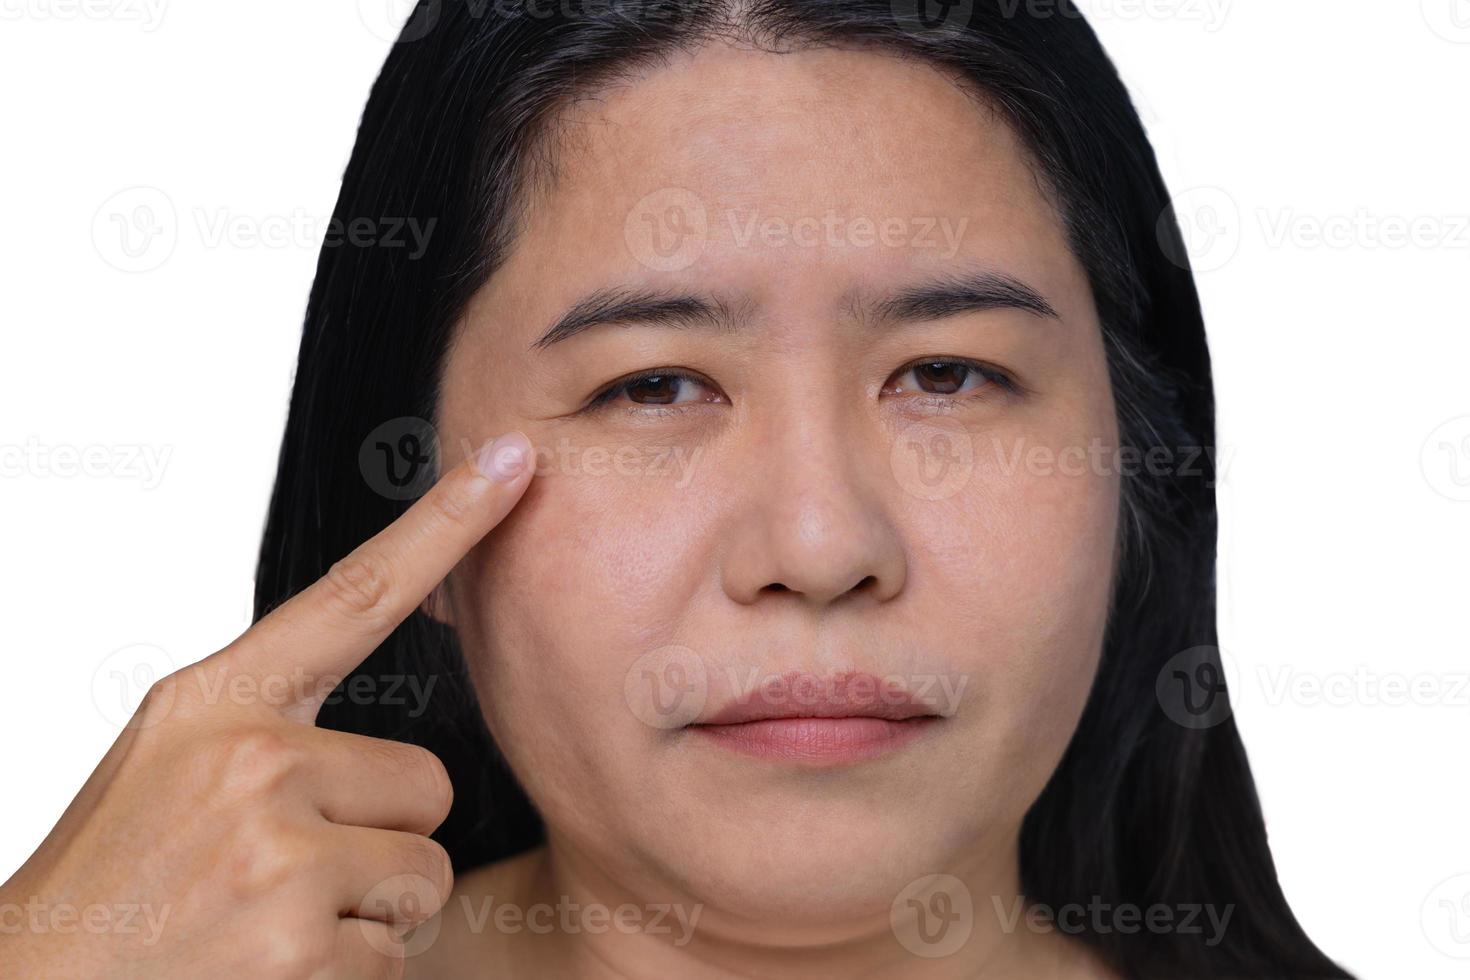 mujer asiática que muestra la flacidez de la piel adiposa flácida, manchas flácidas y oscuras en la cara, celulitis debajo de los ojos, líneas de la frente en la cara, problema arrugado y envejecido de mujer de mediana edad. foto